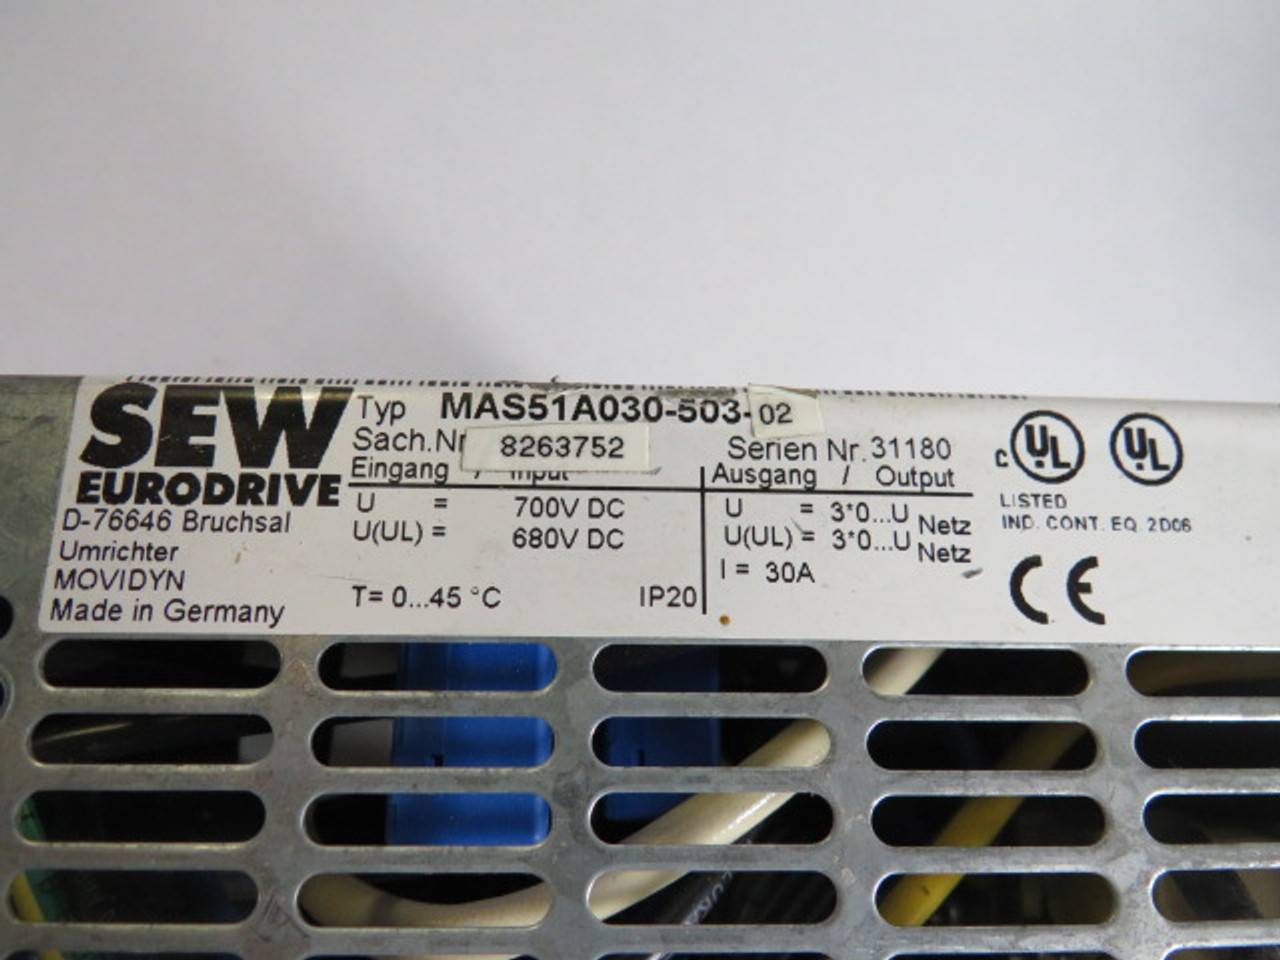 Sew-Eurodrive MAS51A030-503-02 Servo Drive Input 700VDC Output 30A USED